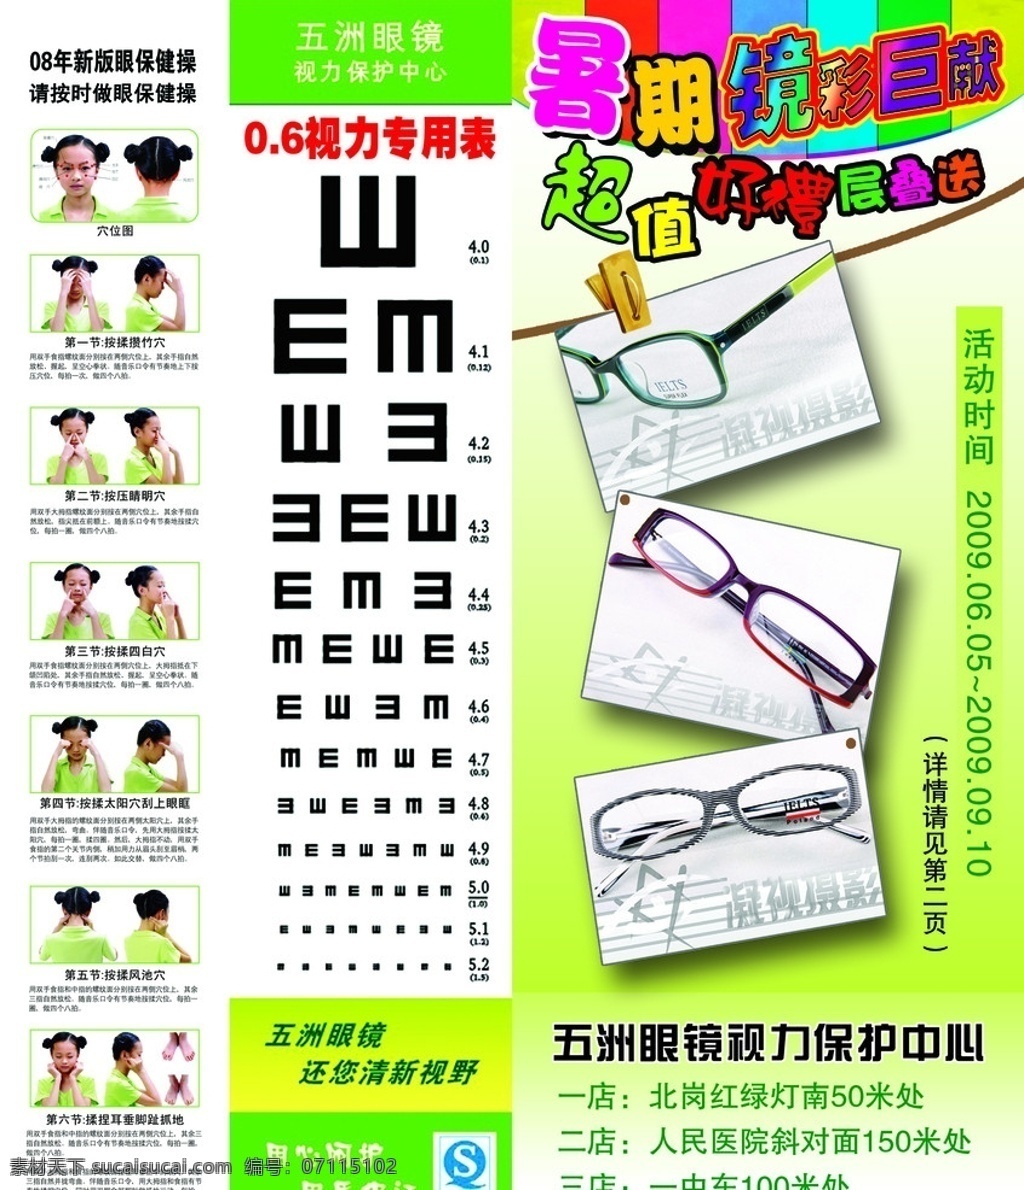 五洲眼镜 优惠 眼保健操 视力 广告设计模板 源文件